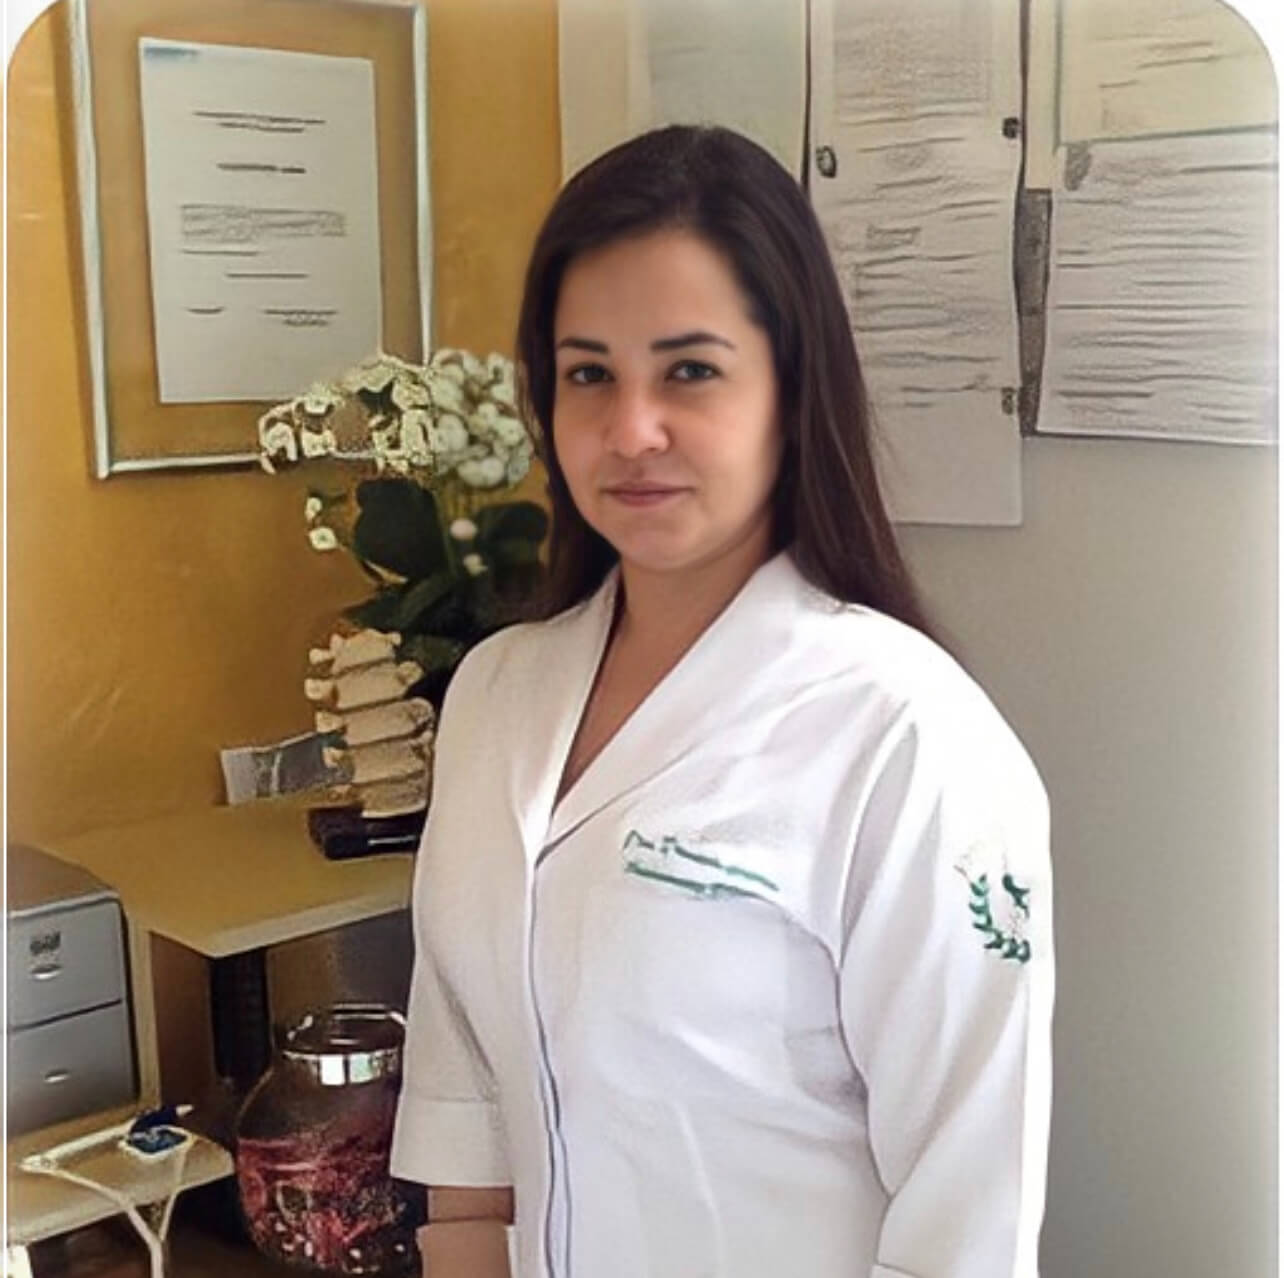 Dra. Daniela Gattas - Fisioterapeuta - Ribeirão Preto /SP - Guia Saúde  Cidades